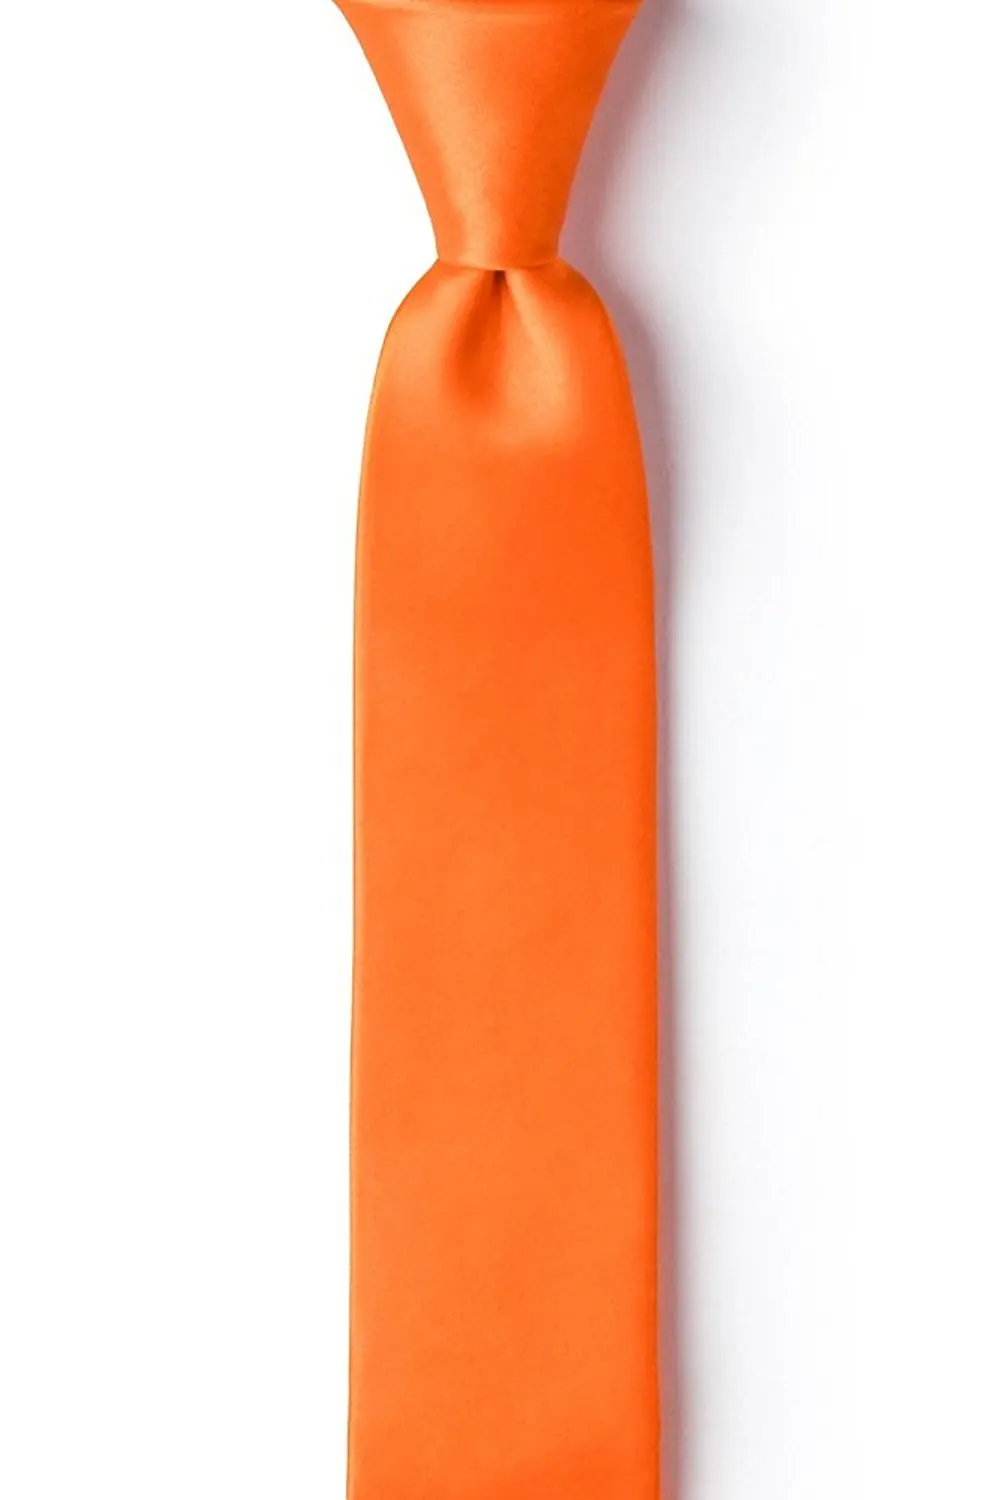 Оранжевый галстук фото